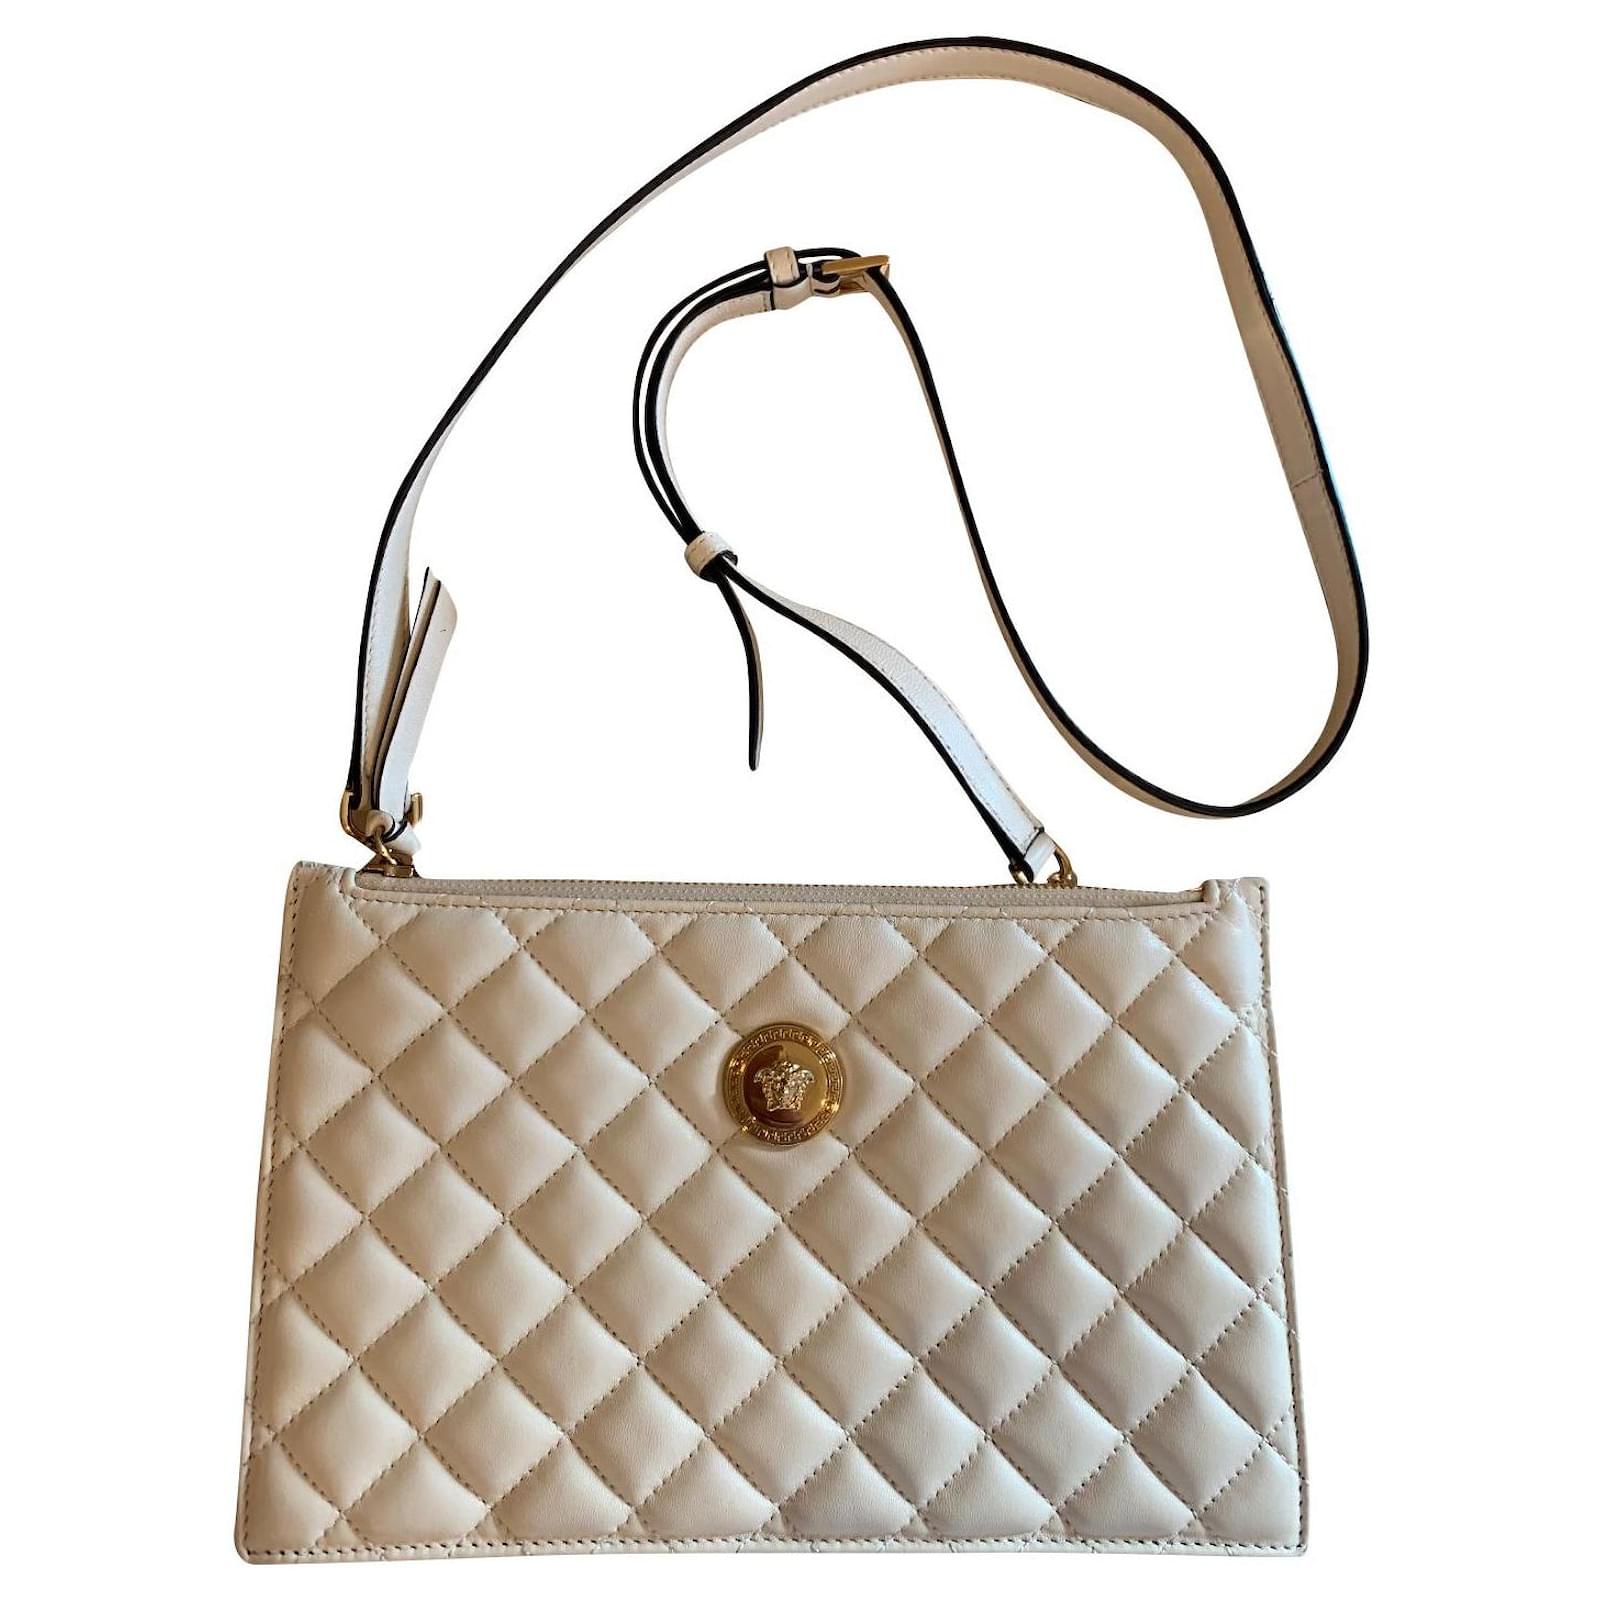 Versace bags 2021 new arrivals women's handbags